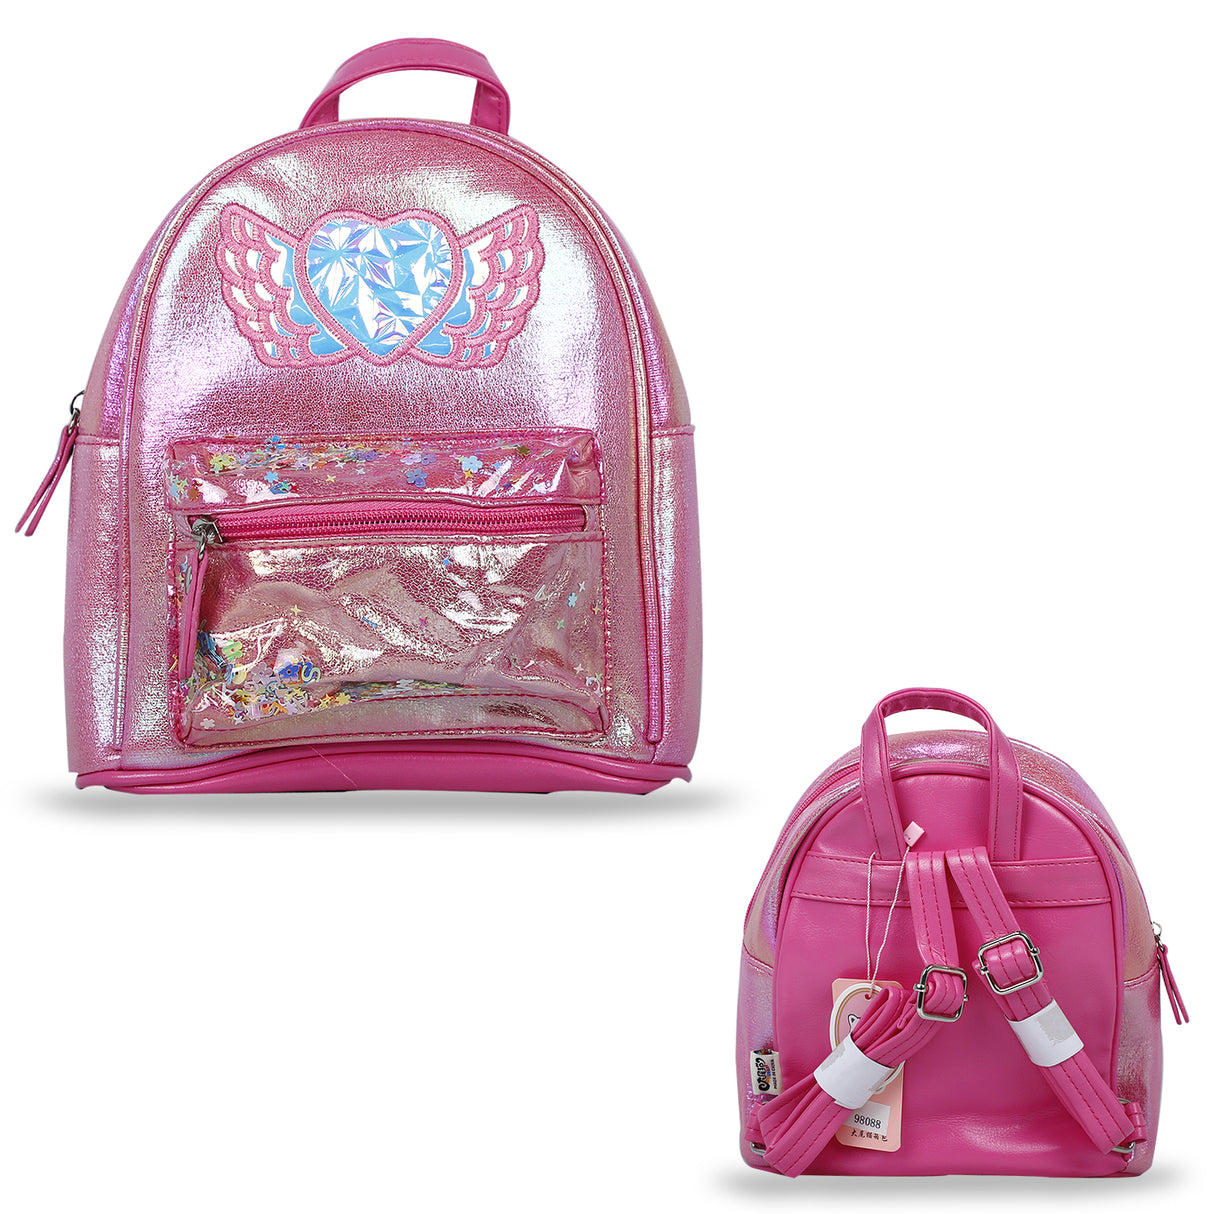 Stylish Dual Tone Girls Backpack Bag